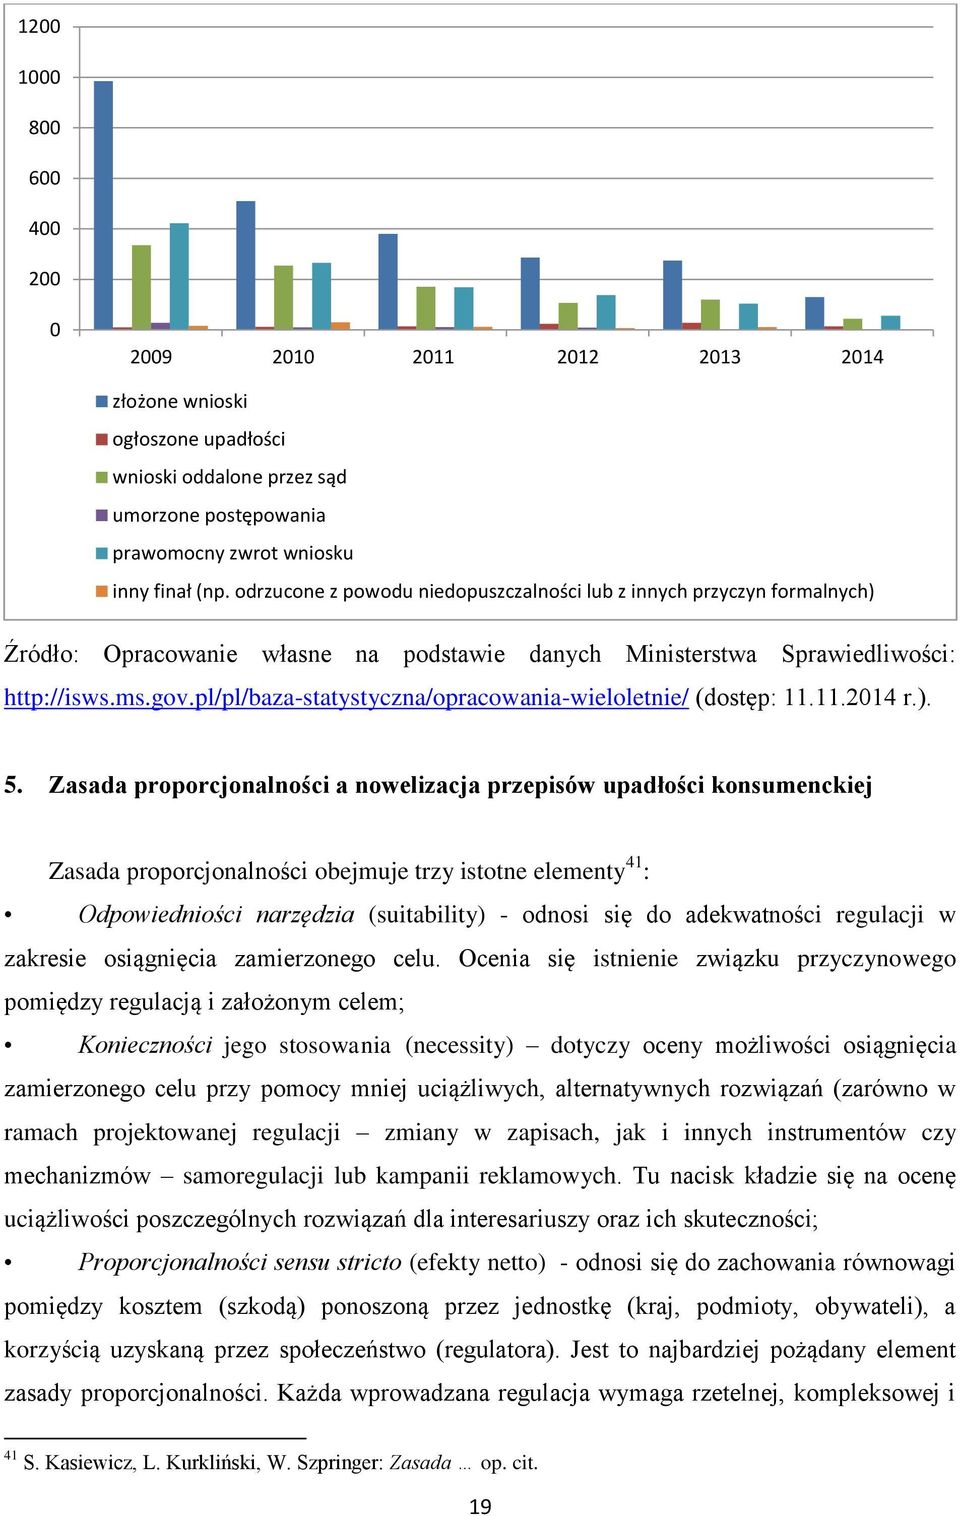 pl/pl/baza-statystyczna/opracowania-wieloletnie/ (dostęp: 11.11.2014 r.). 5.